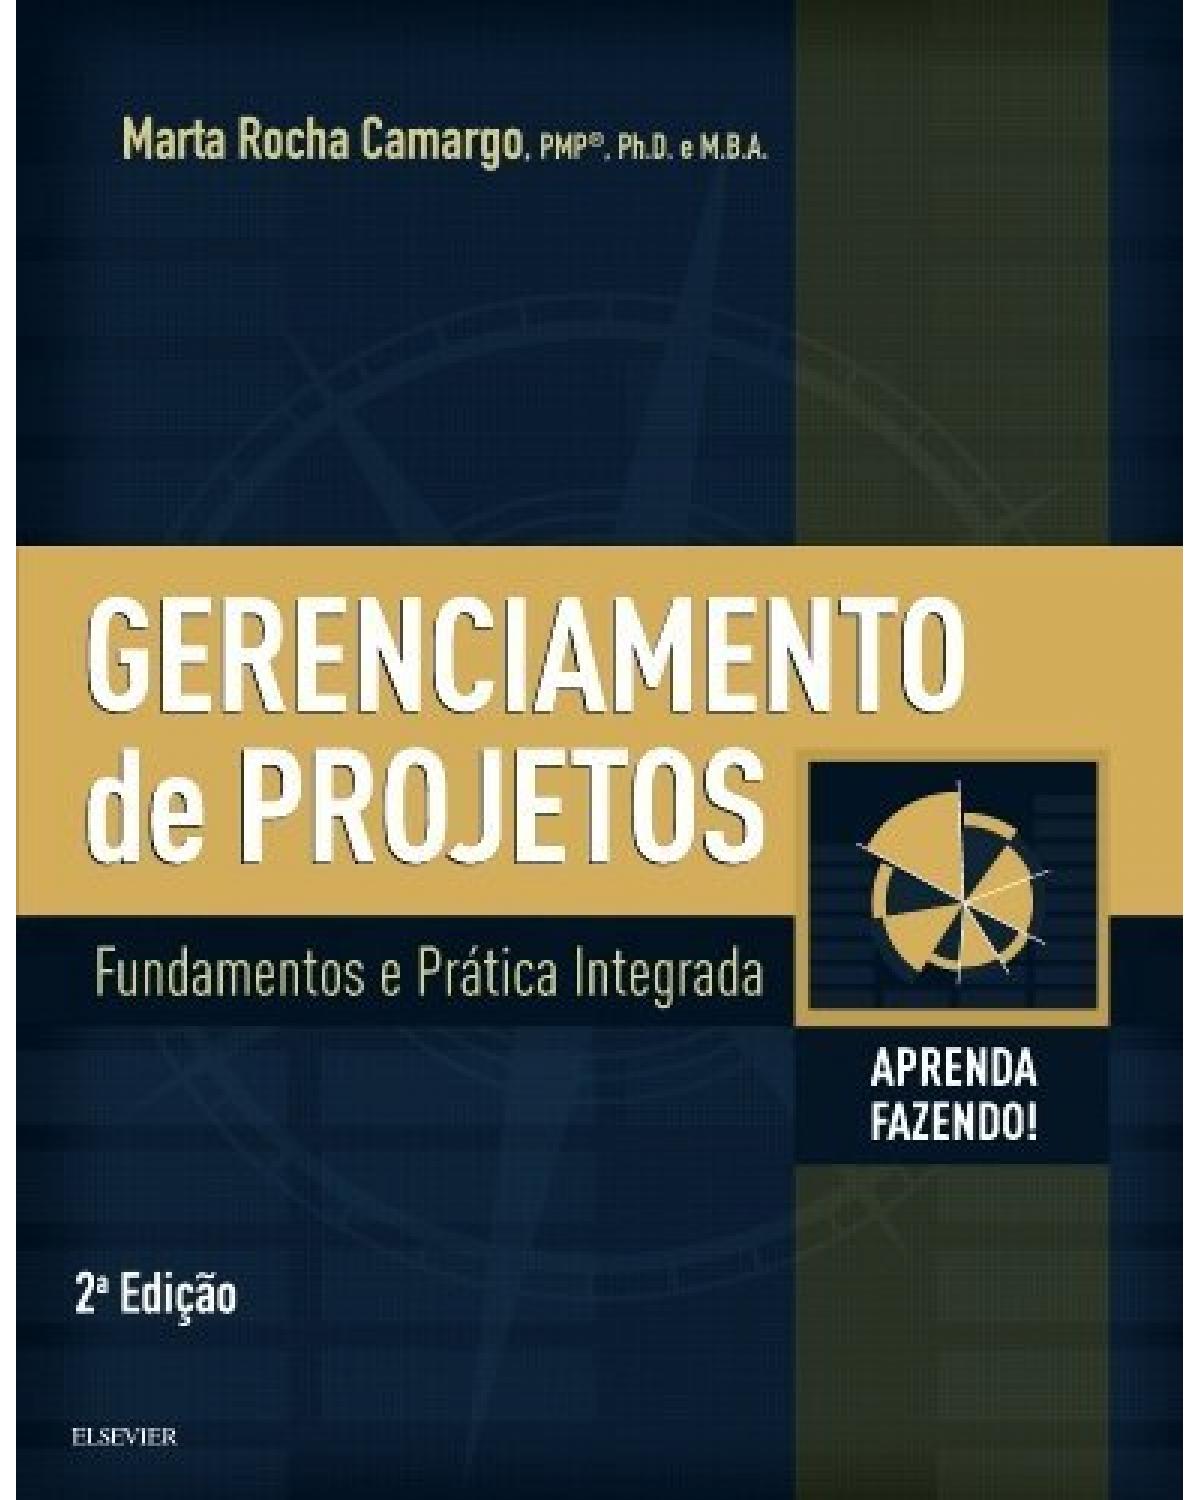 Gerenciamento de projetos - fundamentos e prática integrada - 2ª Edição | 2018